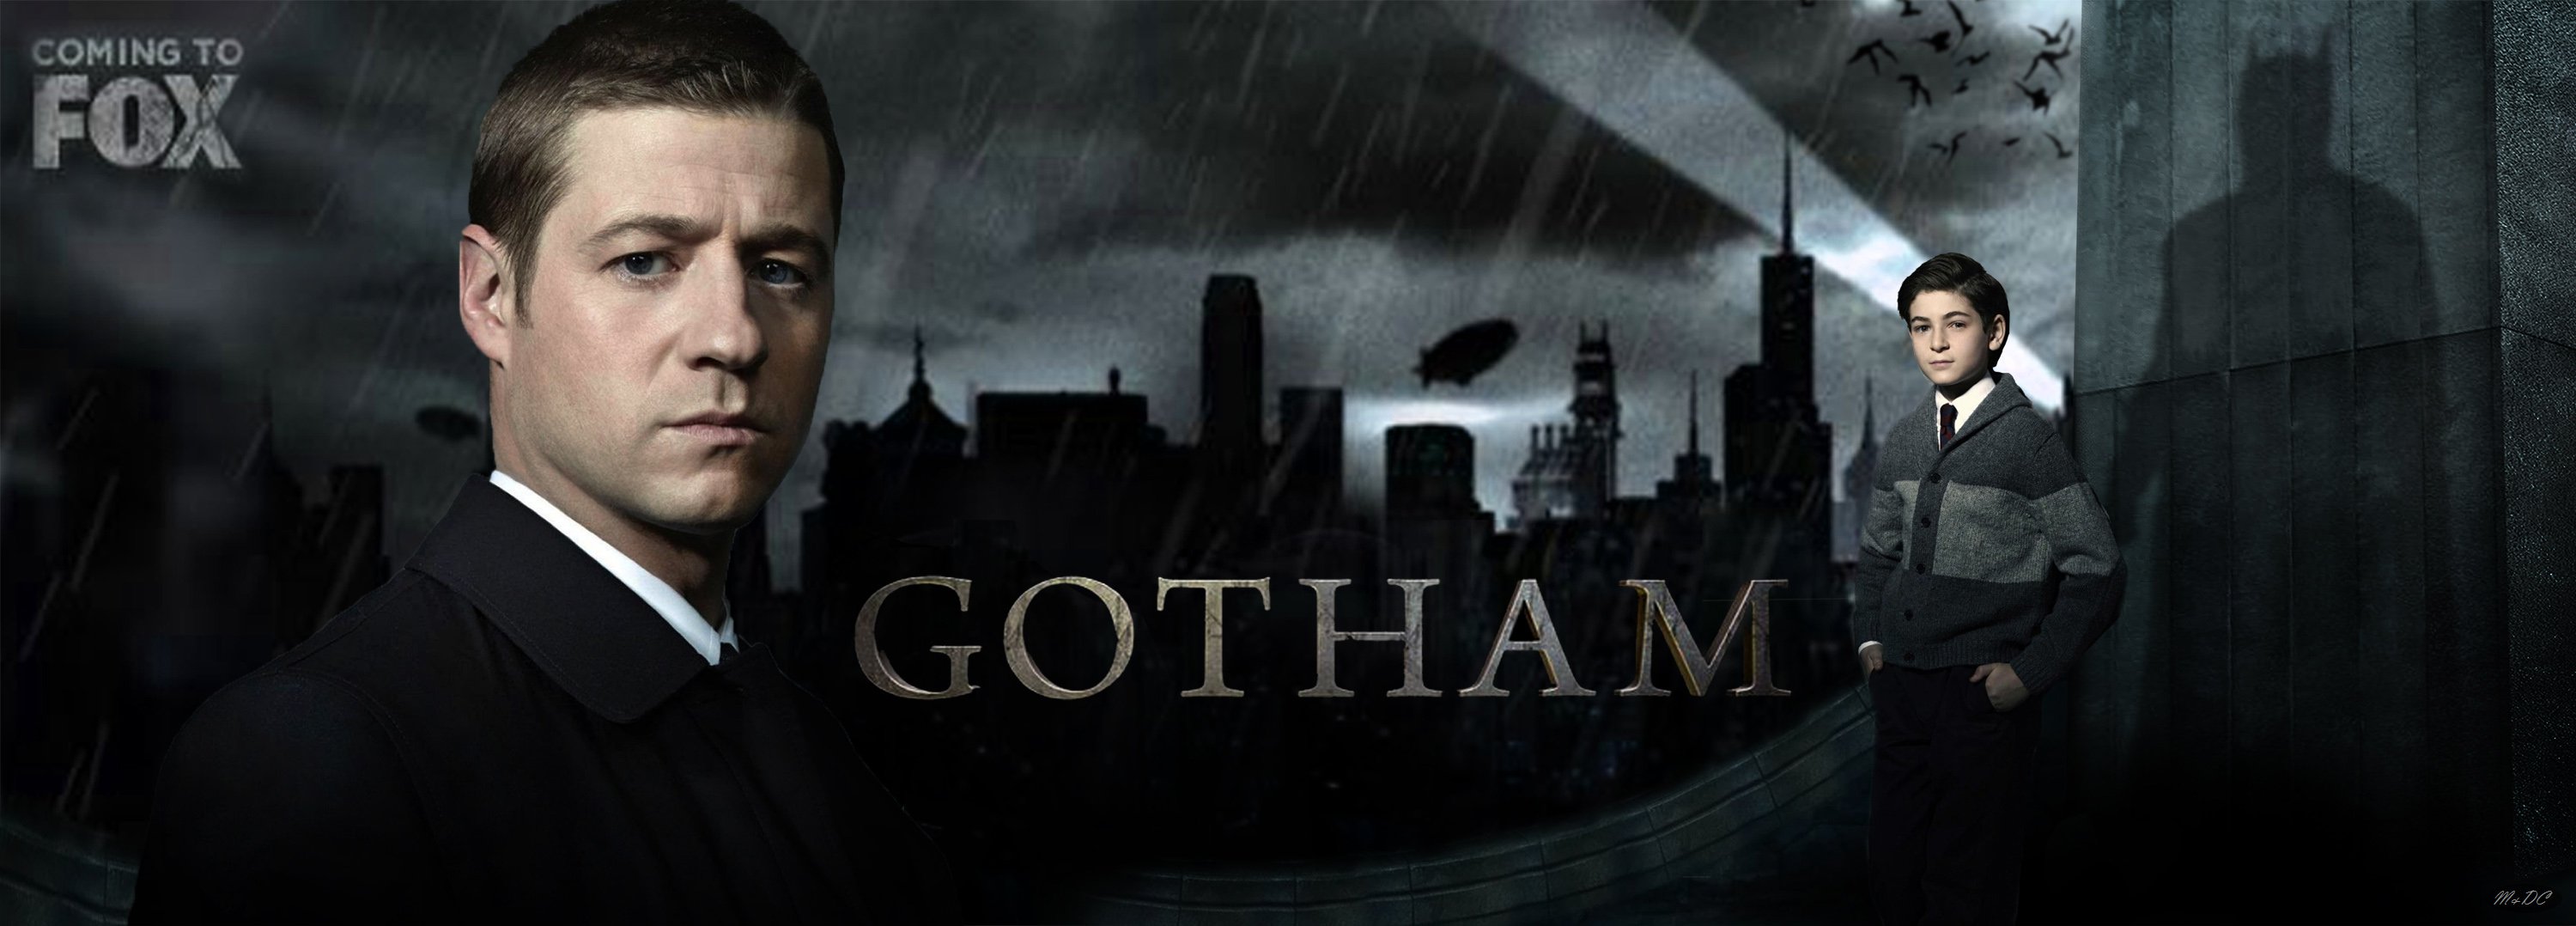 gotham, Series, Batman, Action, Superhero, Dc comics, D c Wallpaper